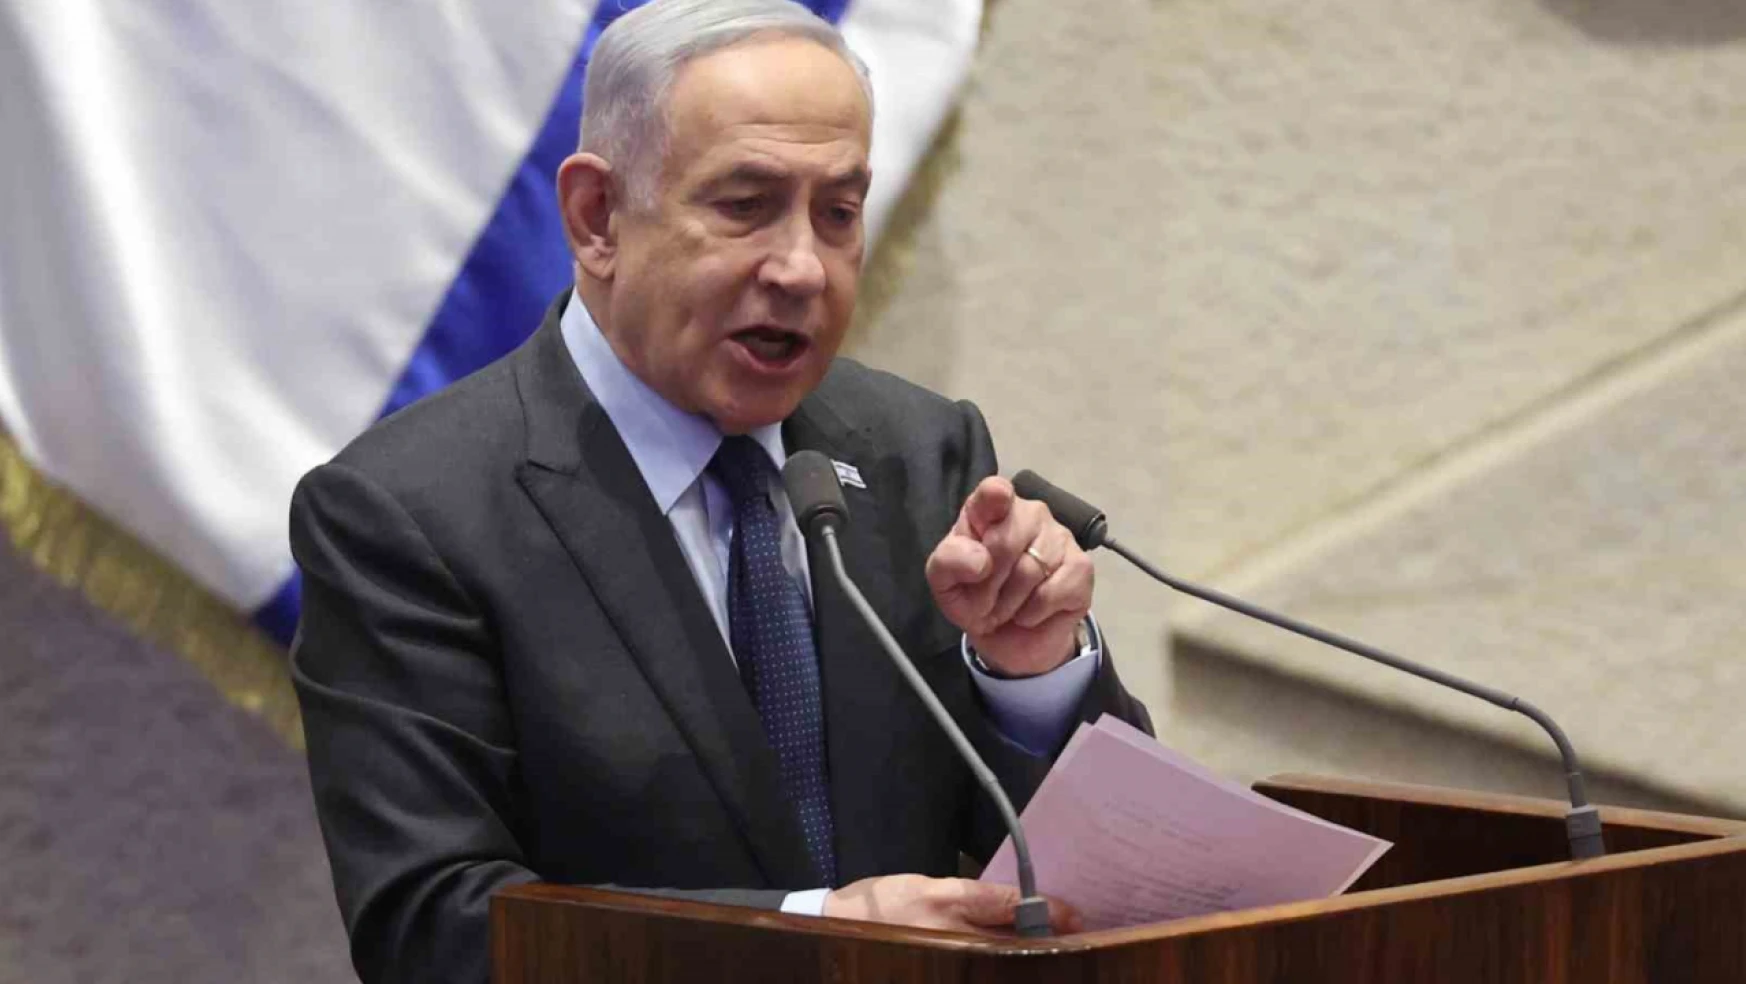 Netanyahu, ABD ziyaretinin iptalini Hamas'a mesaj olarak nitelendirdi